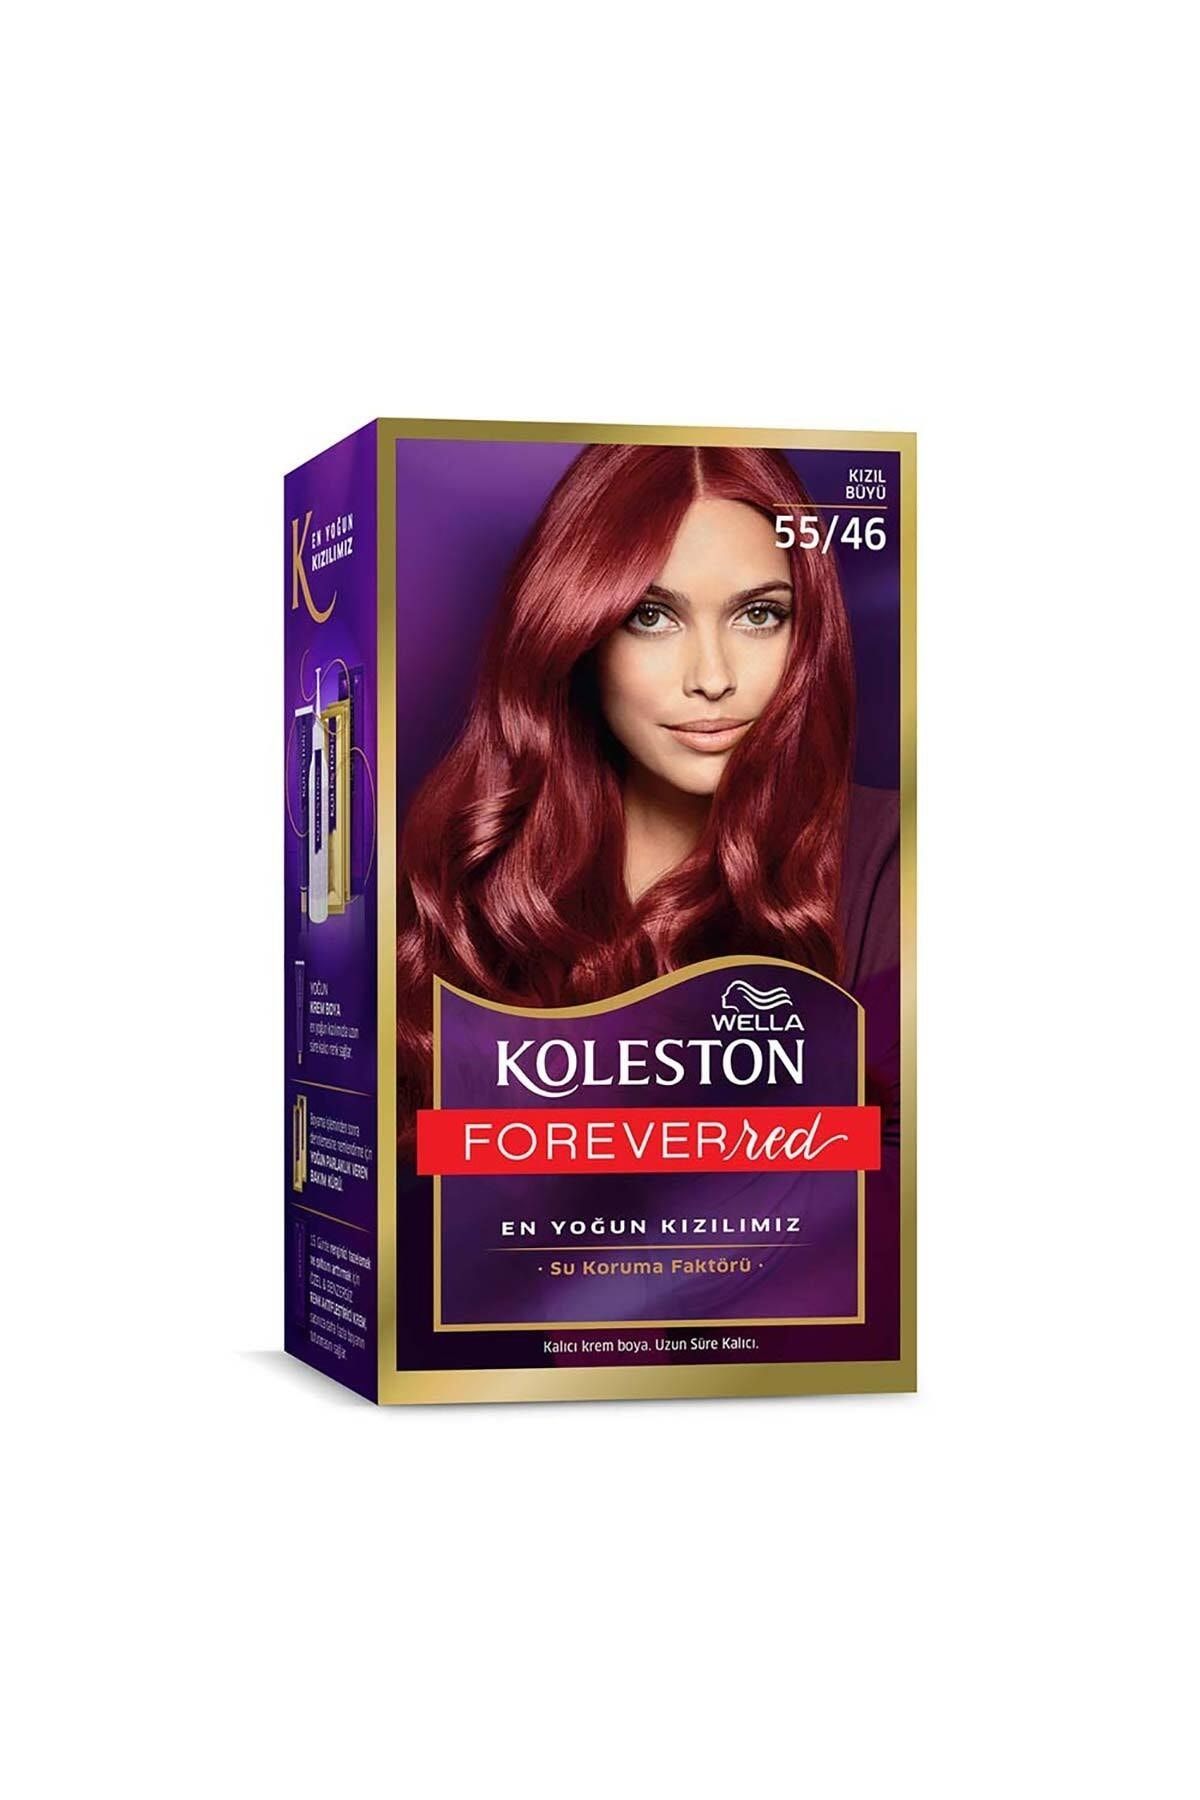 Wella Koleston Kit Saç Boyası 55/46 Kızıl Büyü